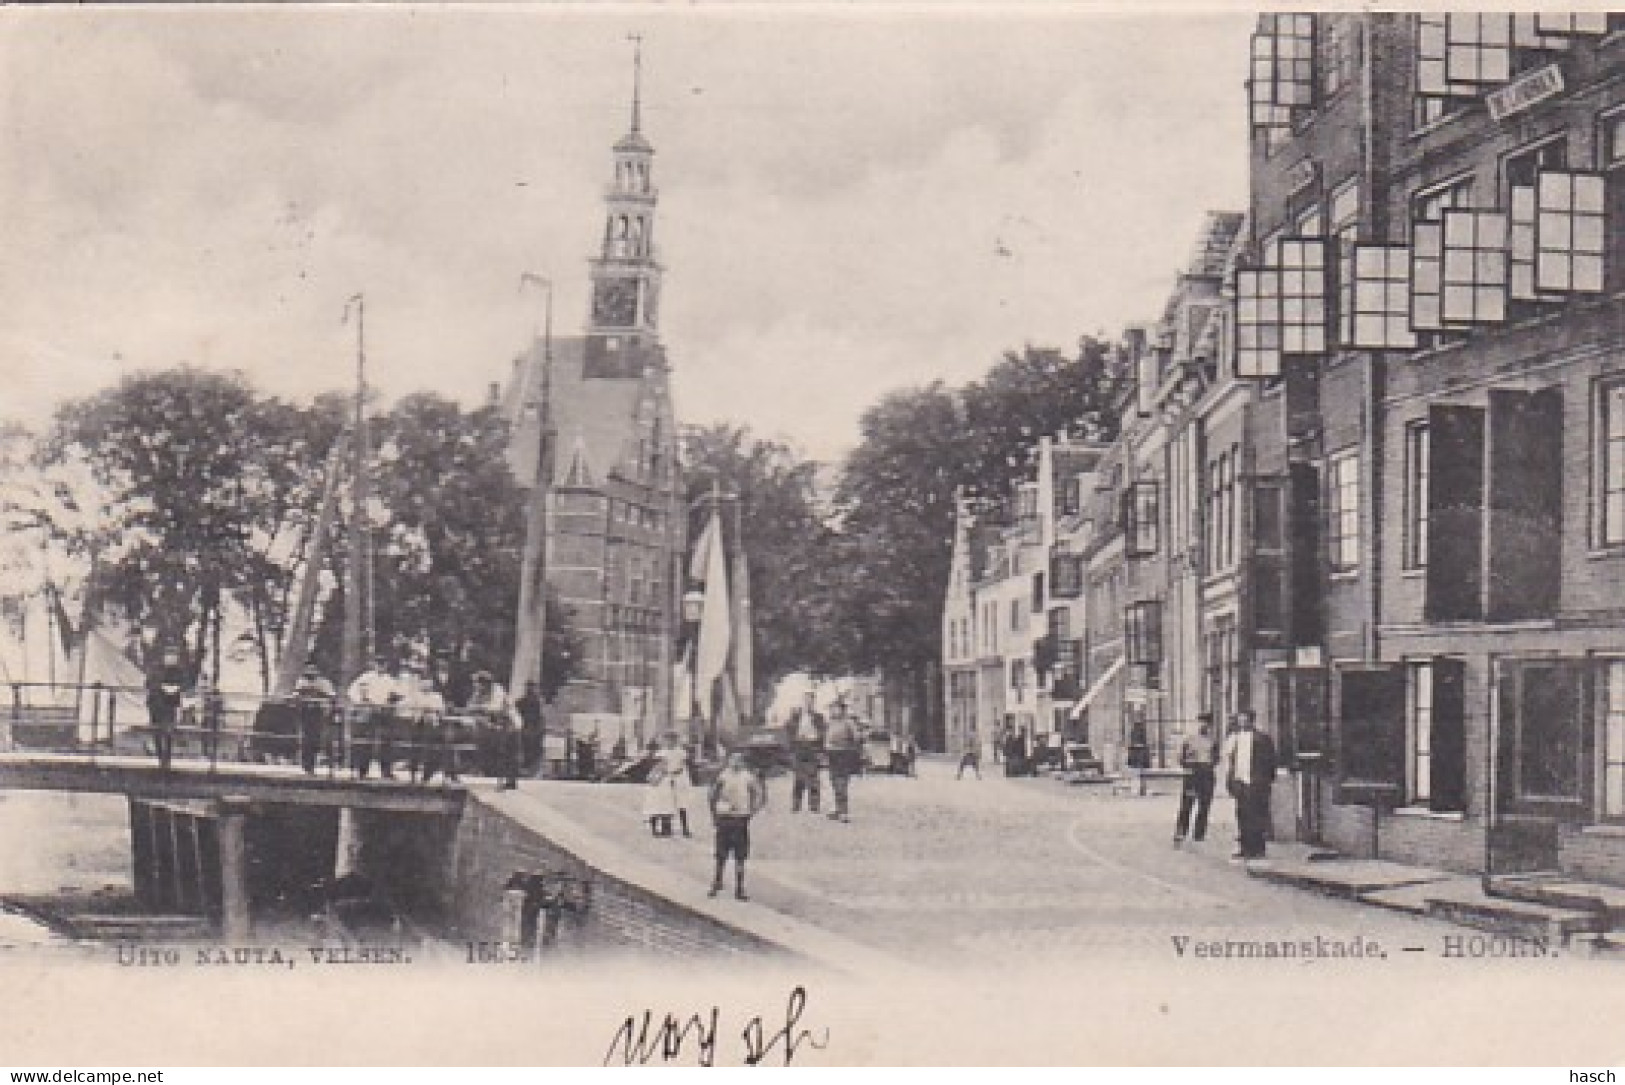 481248Hoorn, Veermanskade. – 1904. - Hoorn